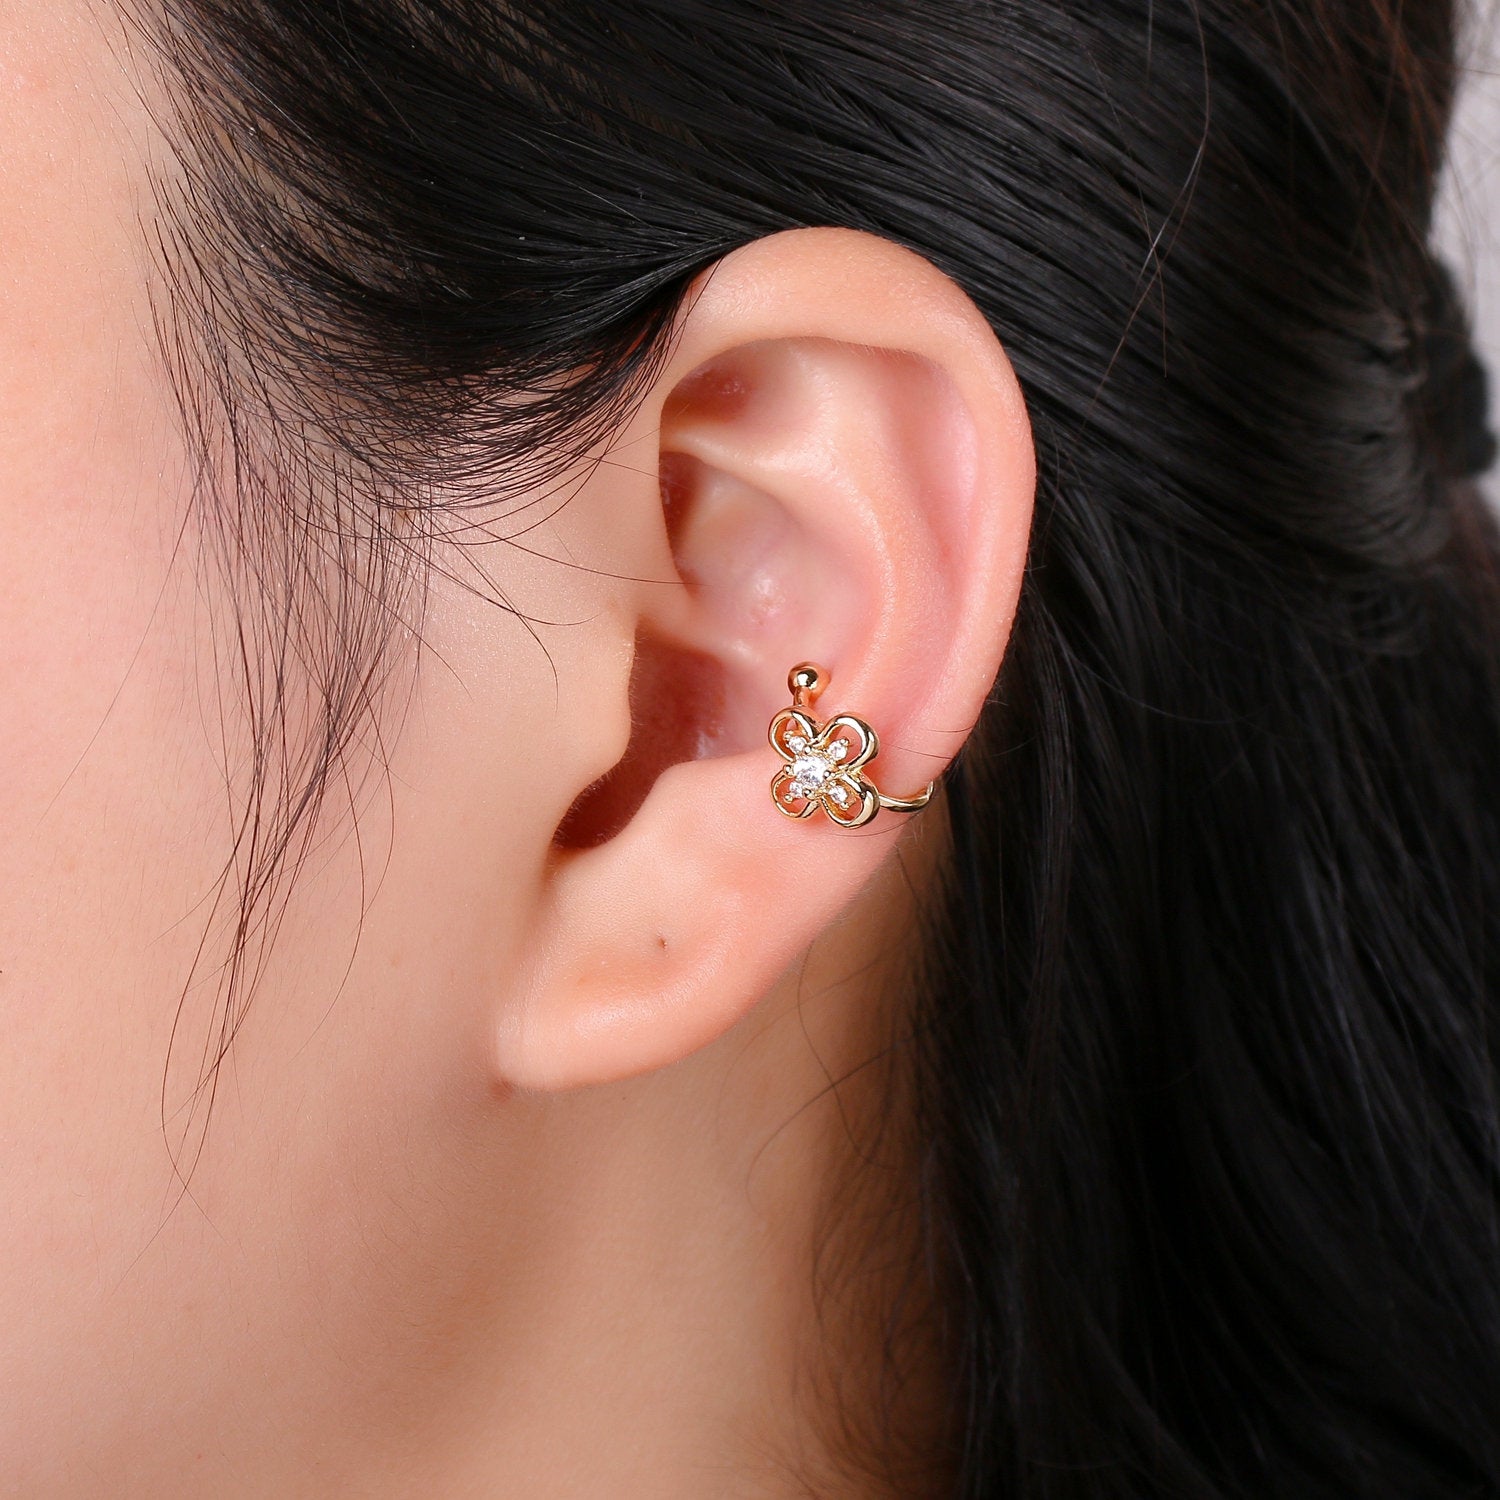 1x Dainty Flower Earcuff Gold Ear cuff cartilage earring no piercing, gold ear cuff, fake piercing, Clover earcuff, Floral ear cuff wrap - DLUXCA